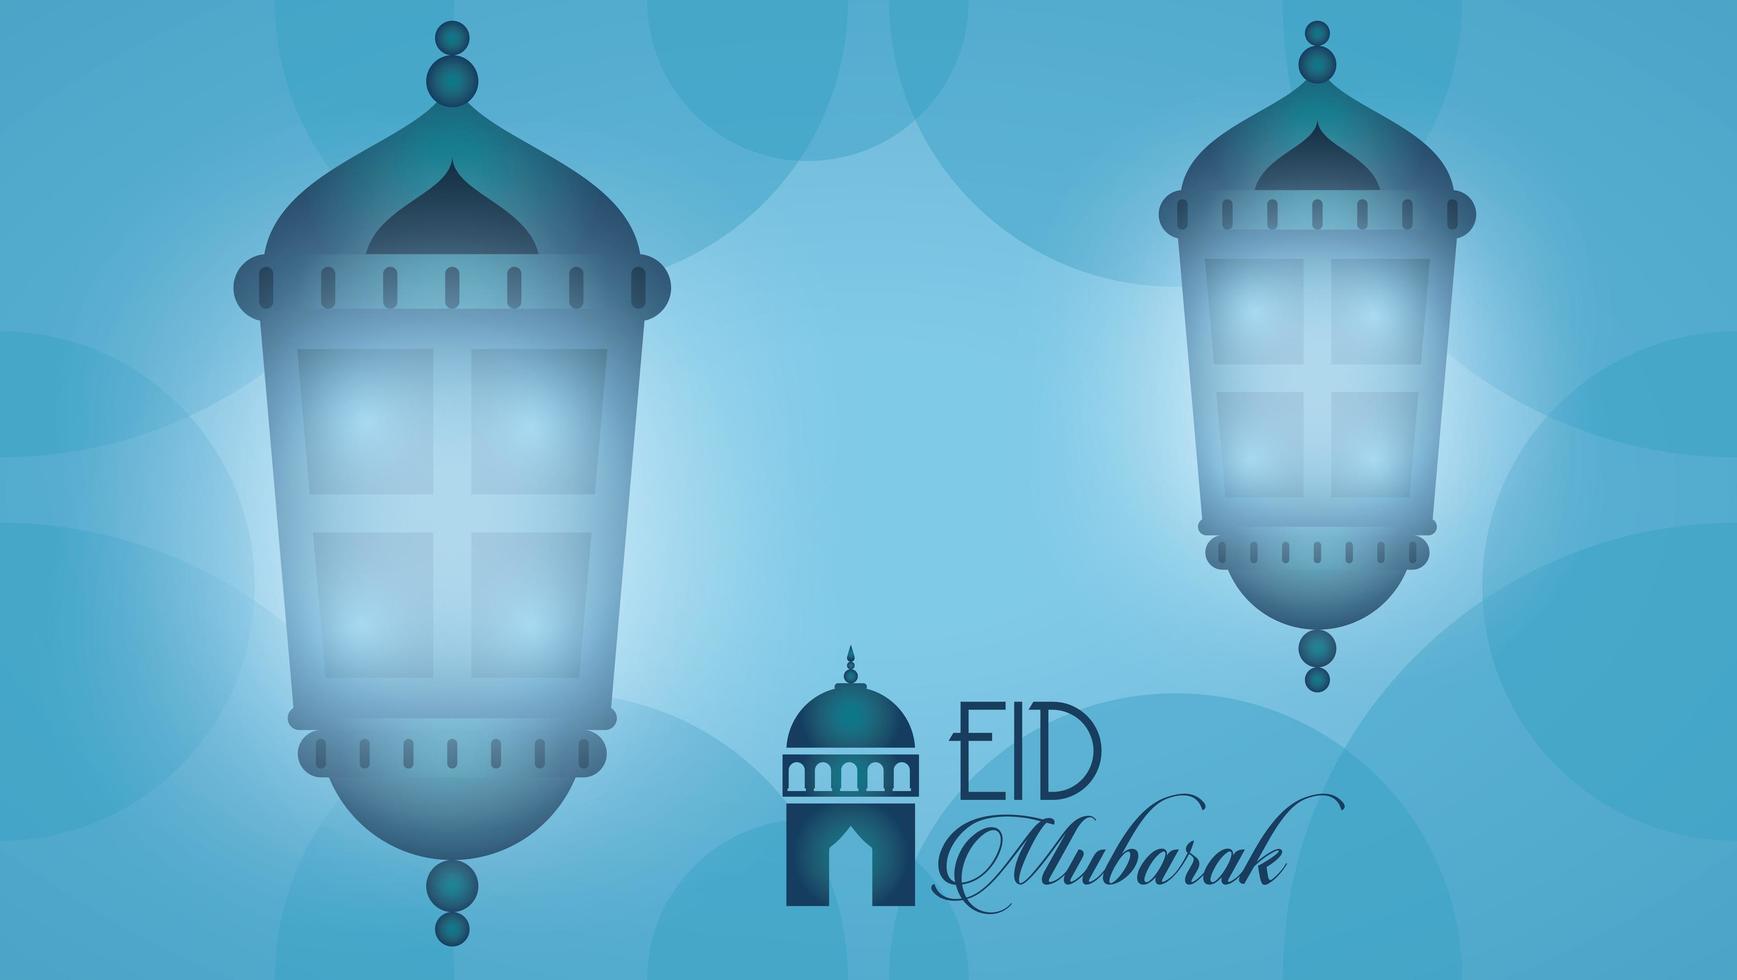 biglietto celebrativo eid mubarak con lanterne appese vettore